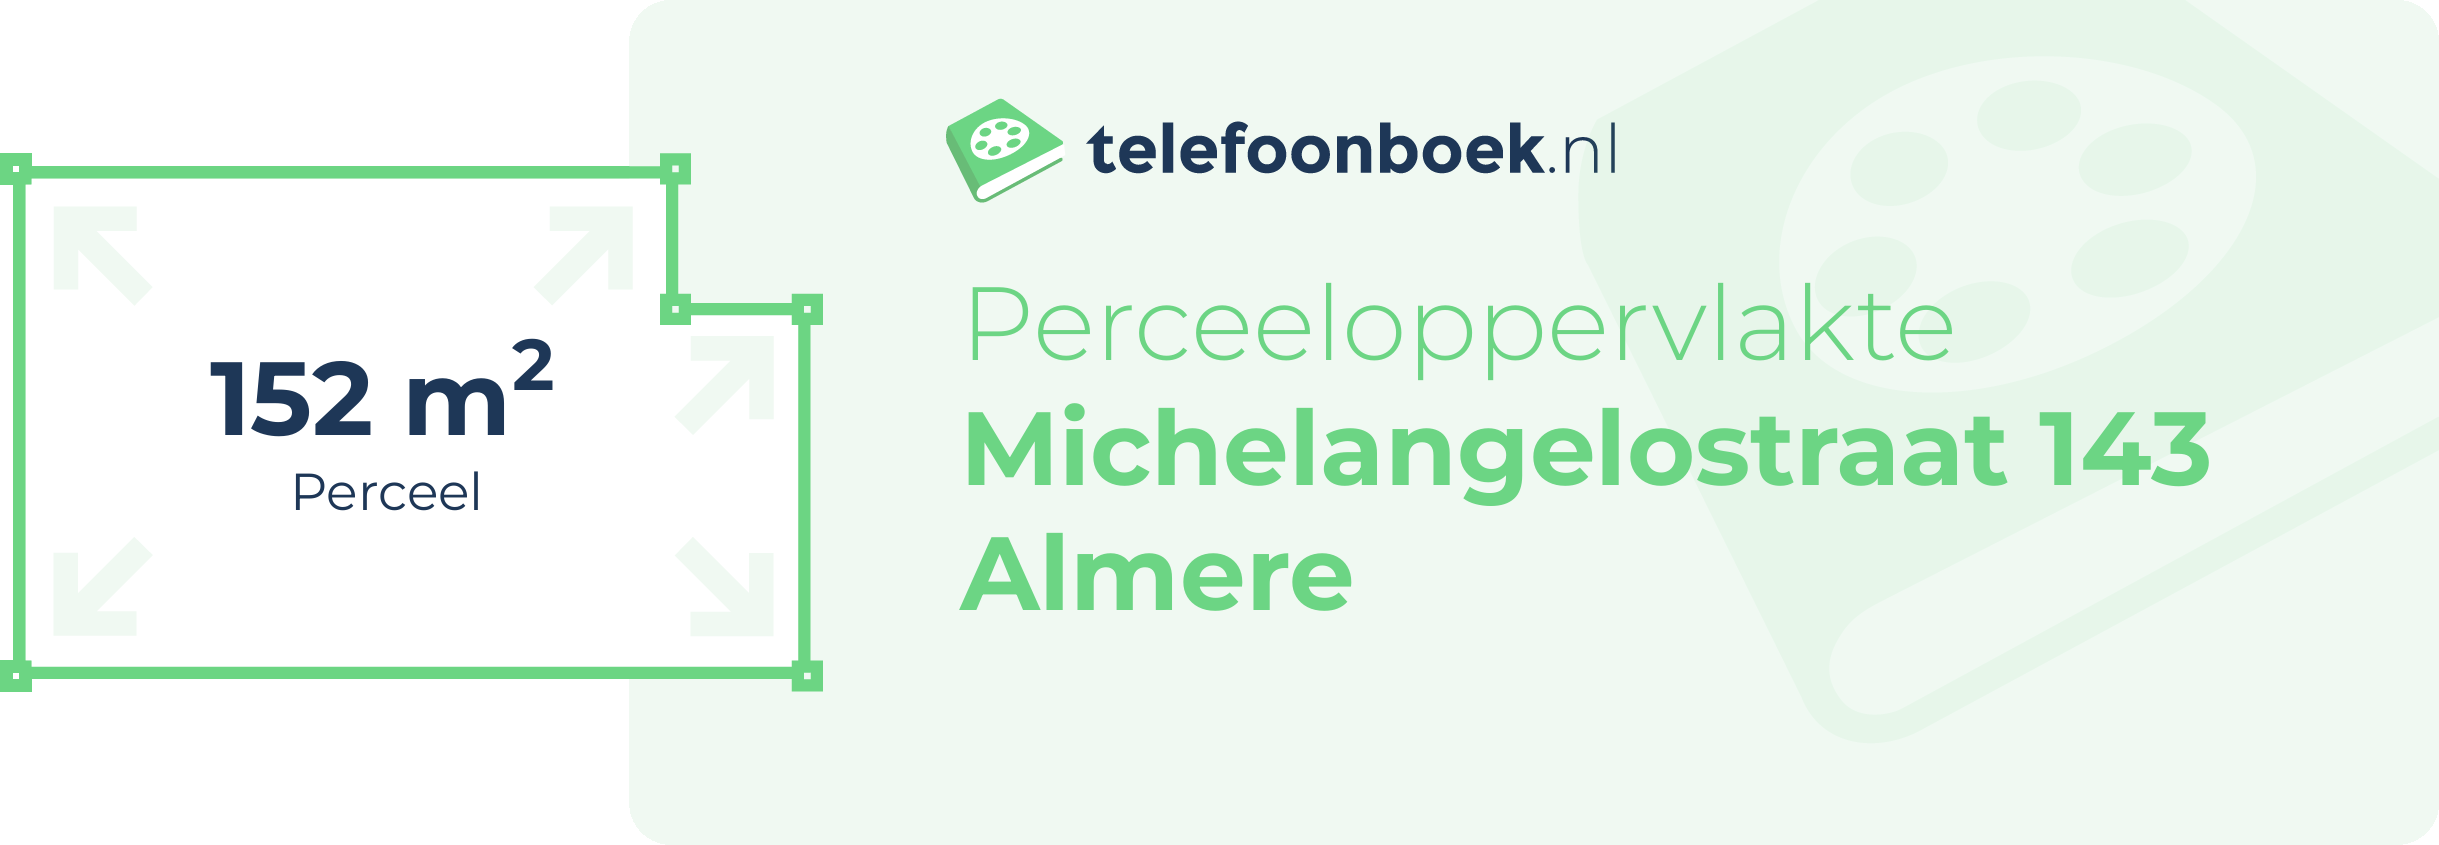 Perceeloppervlakte Michelangelostraat 143 Almere